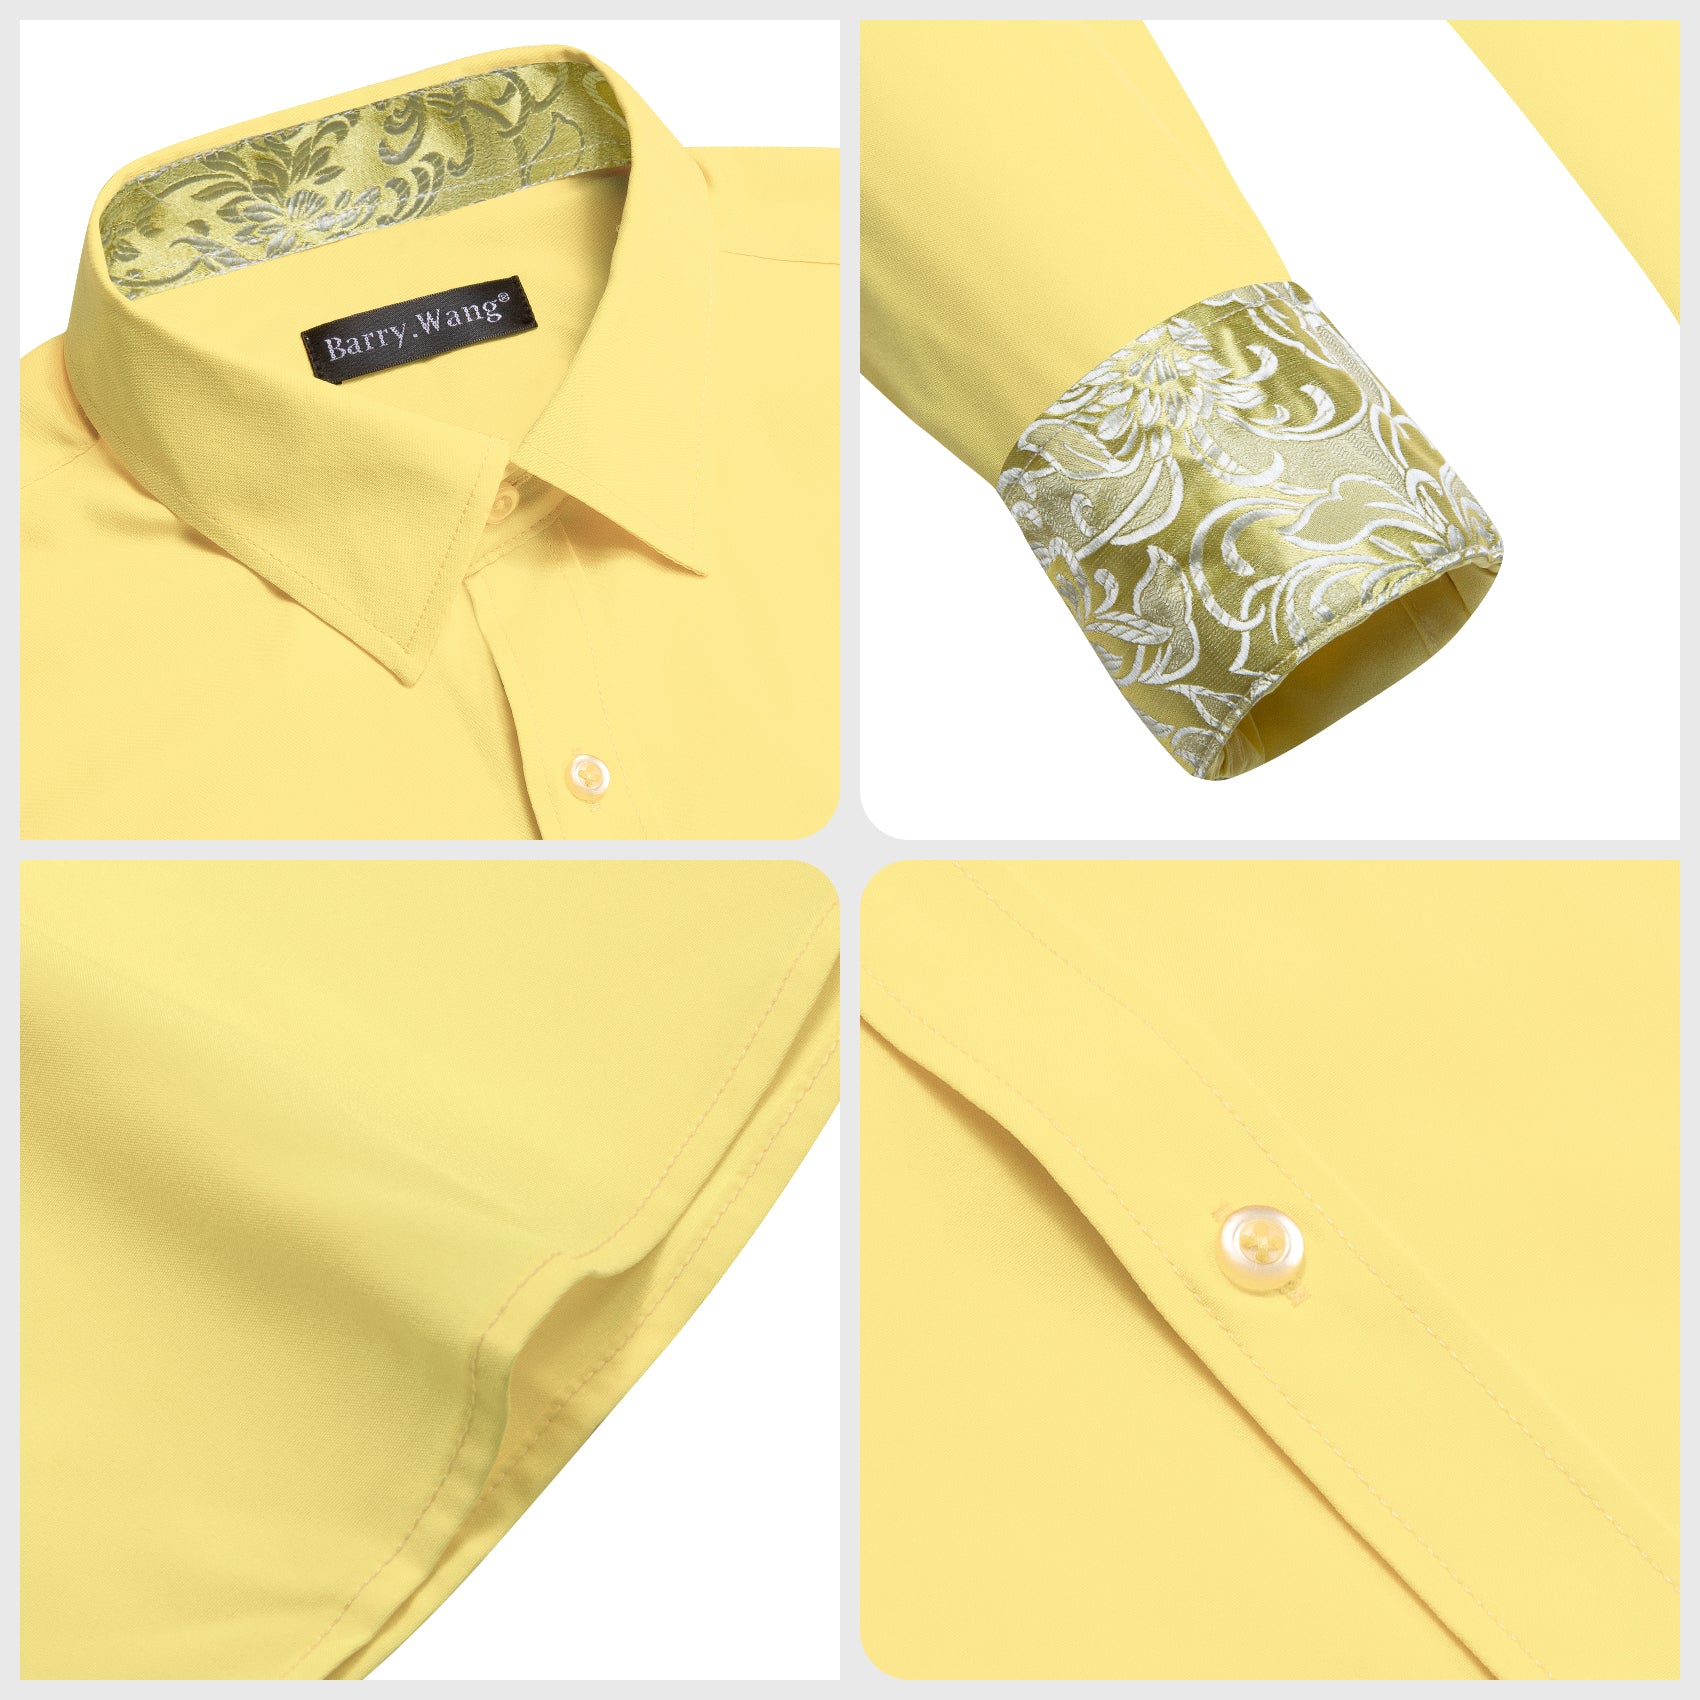 Barry.wang Formal Light Yellow Gold Splicing Men's Business Shirt